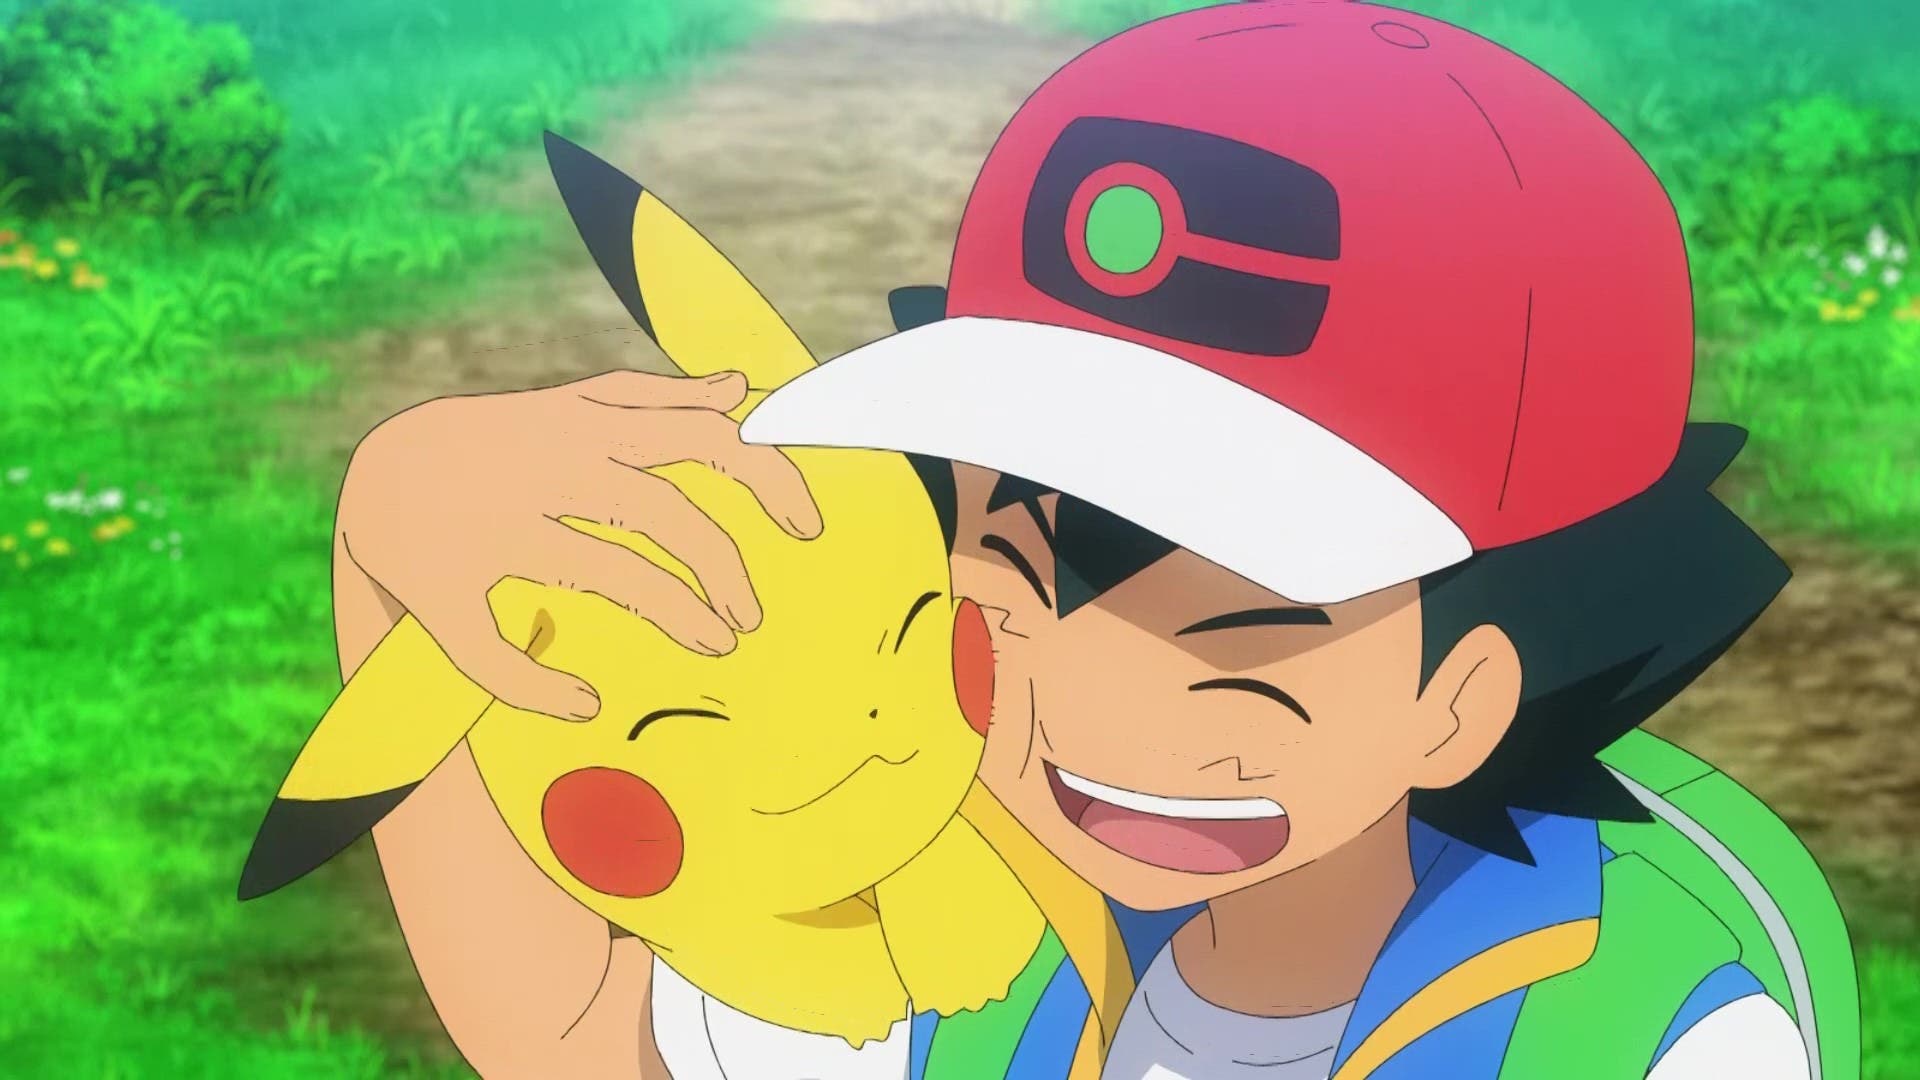 Prepara los pañuelos: aquí tienes en HD los 3 últimos minutos de Ash en el anime Pokémon